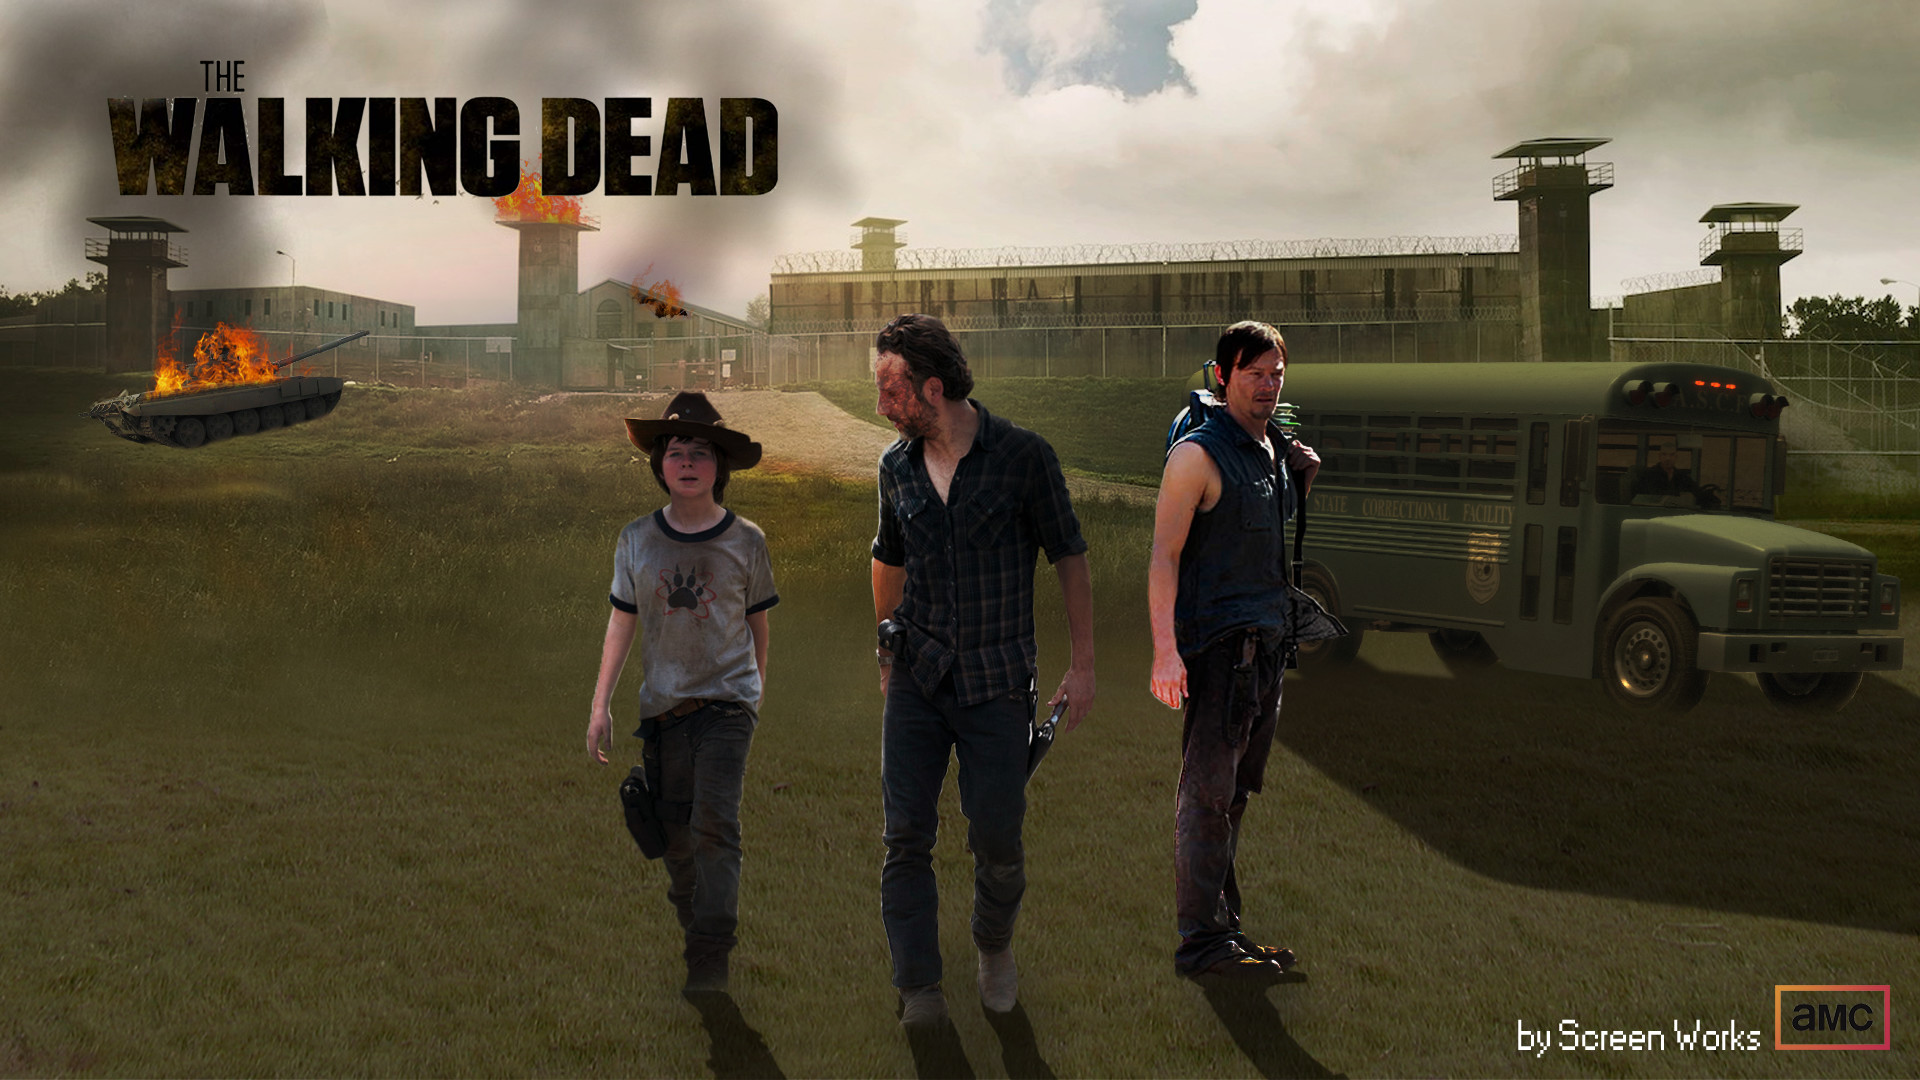 Walking Dead Wallpaper 1080p - Walking Dead Game Wallpaper Season 4 - HD Wallpaper 